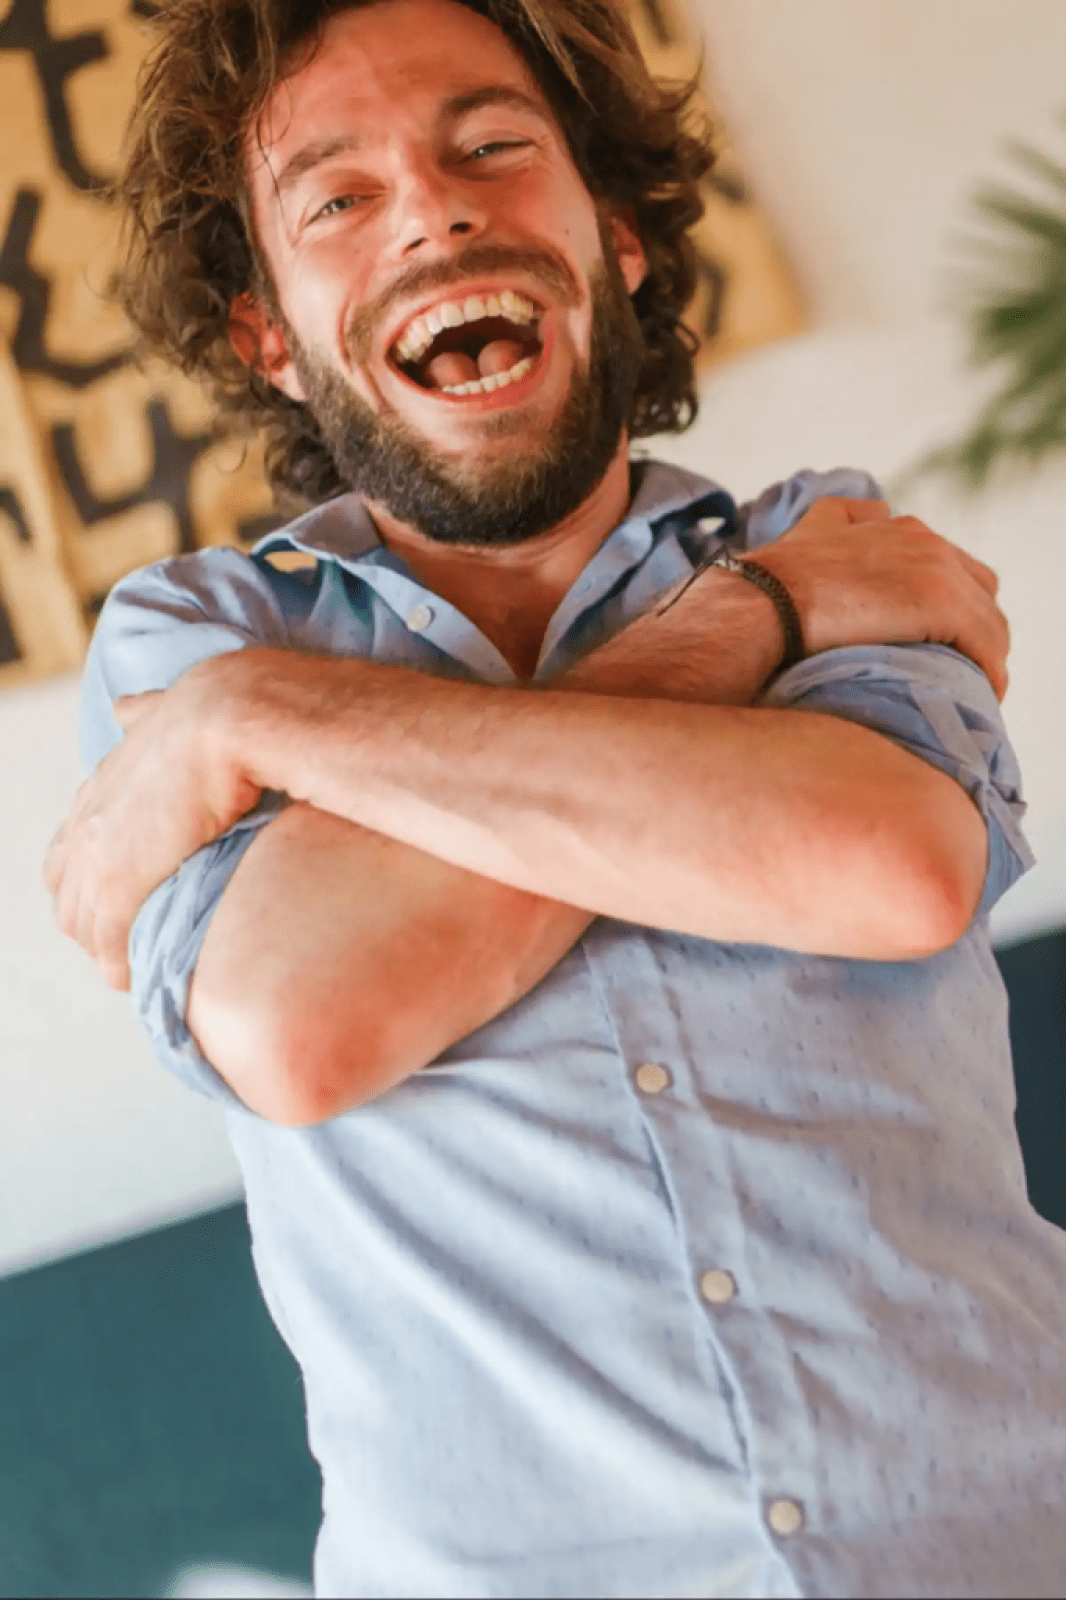 Man laughing while hugging himself